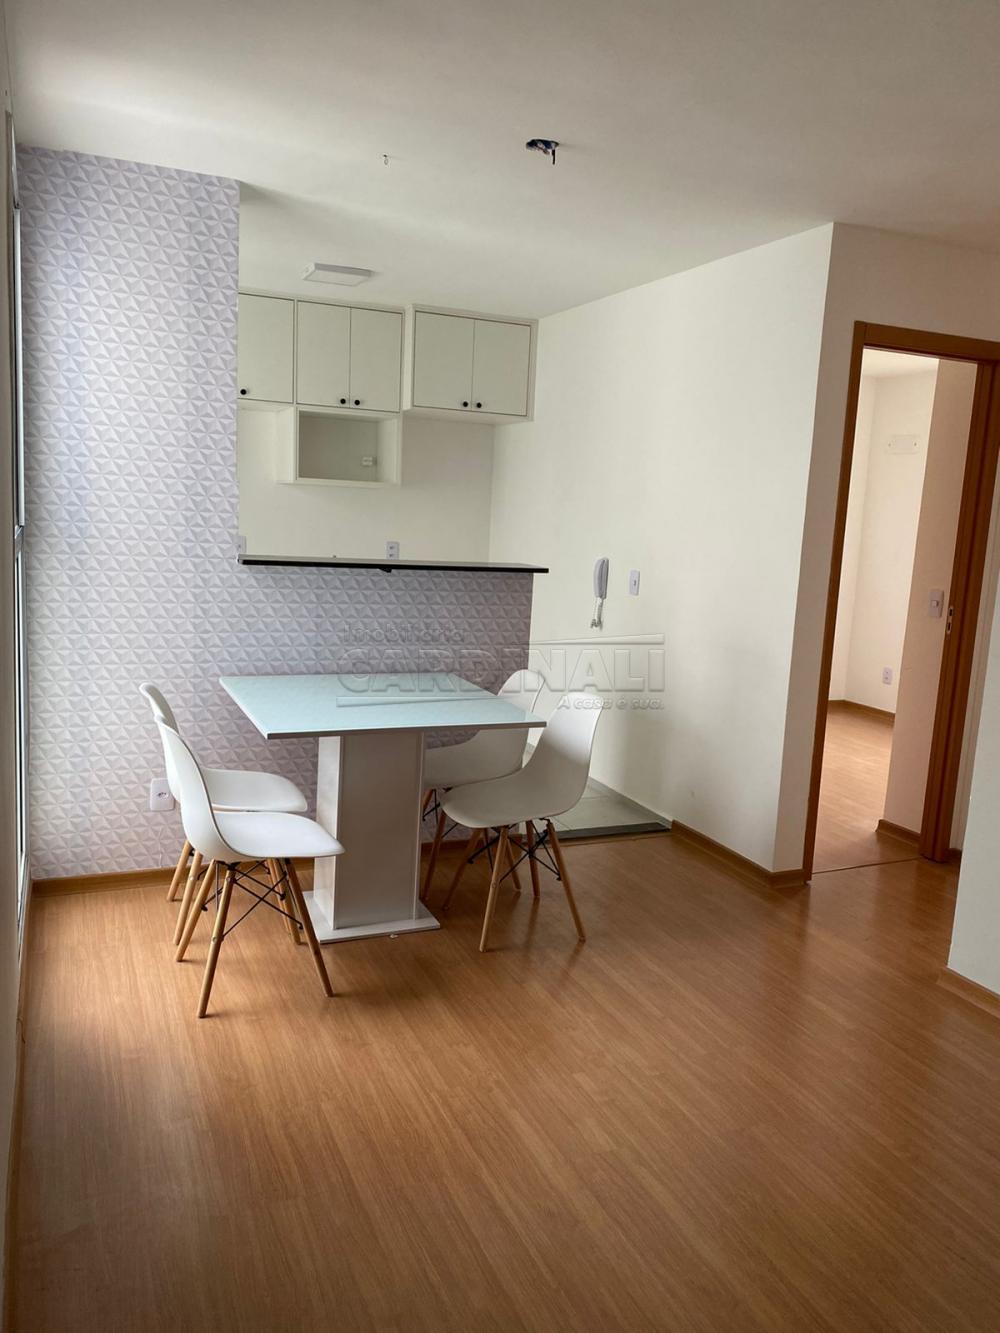 Comprar Apartamento / Padrão em São Carlos R$ 150.000,00 - Foto 7